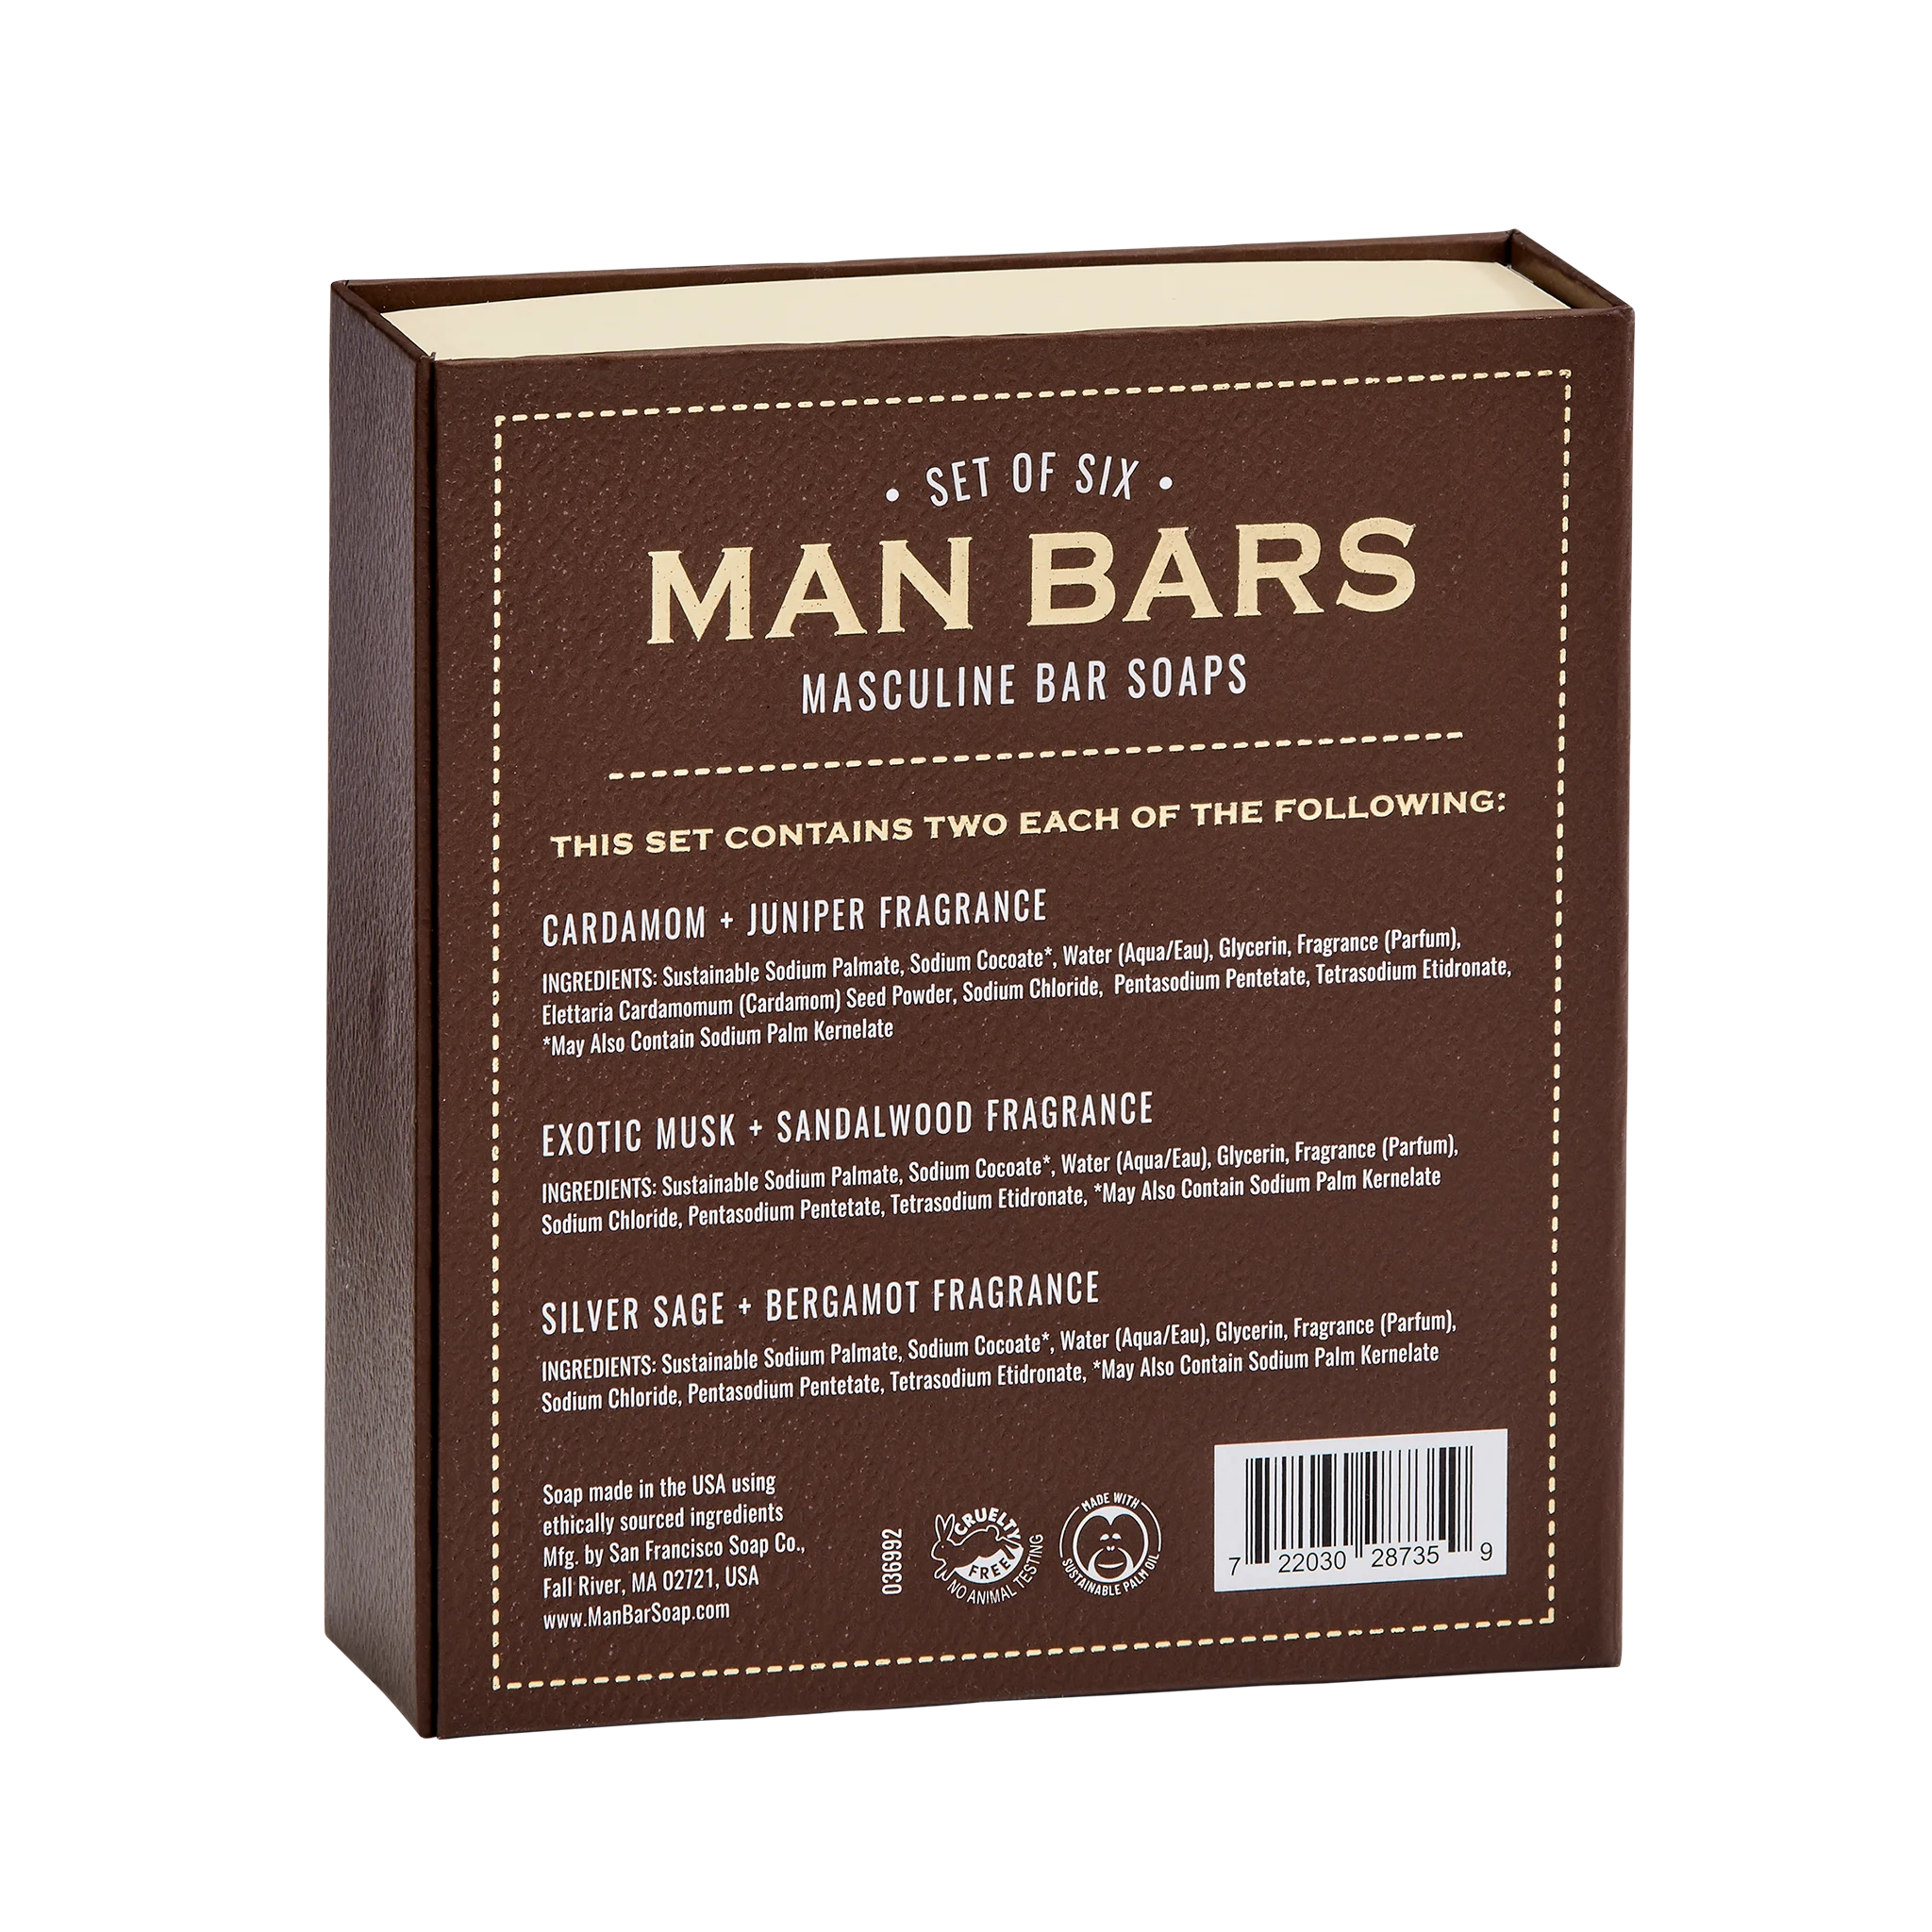 Man Bar 6 piece sampler set, back side of box